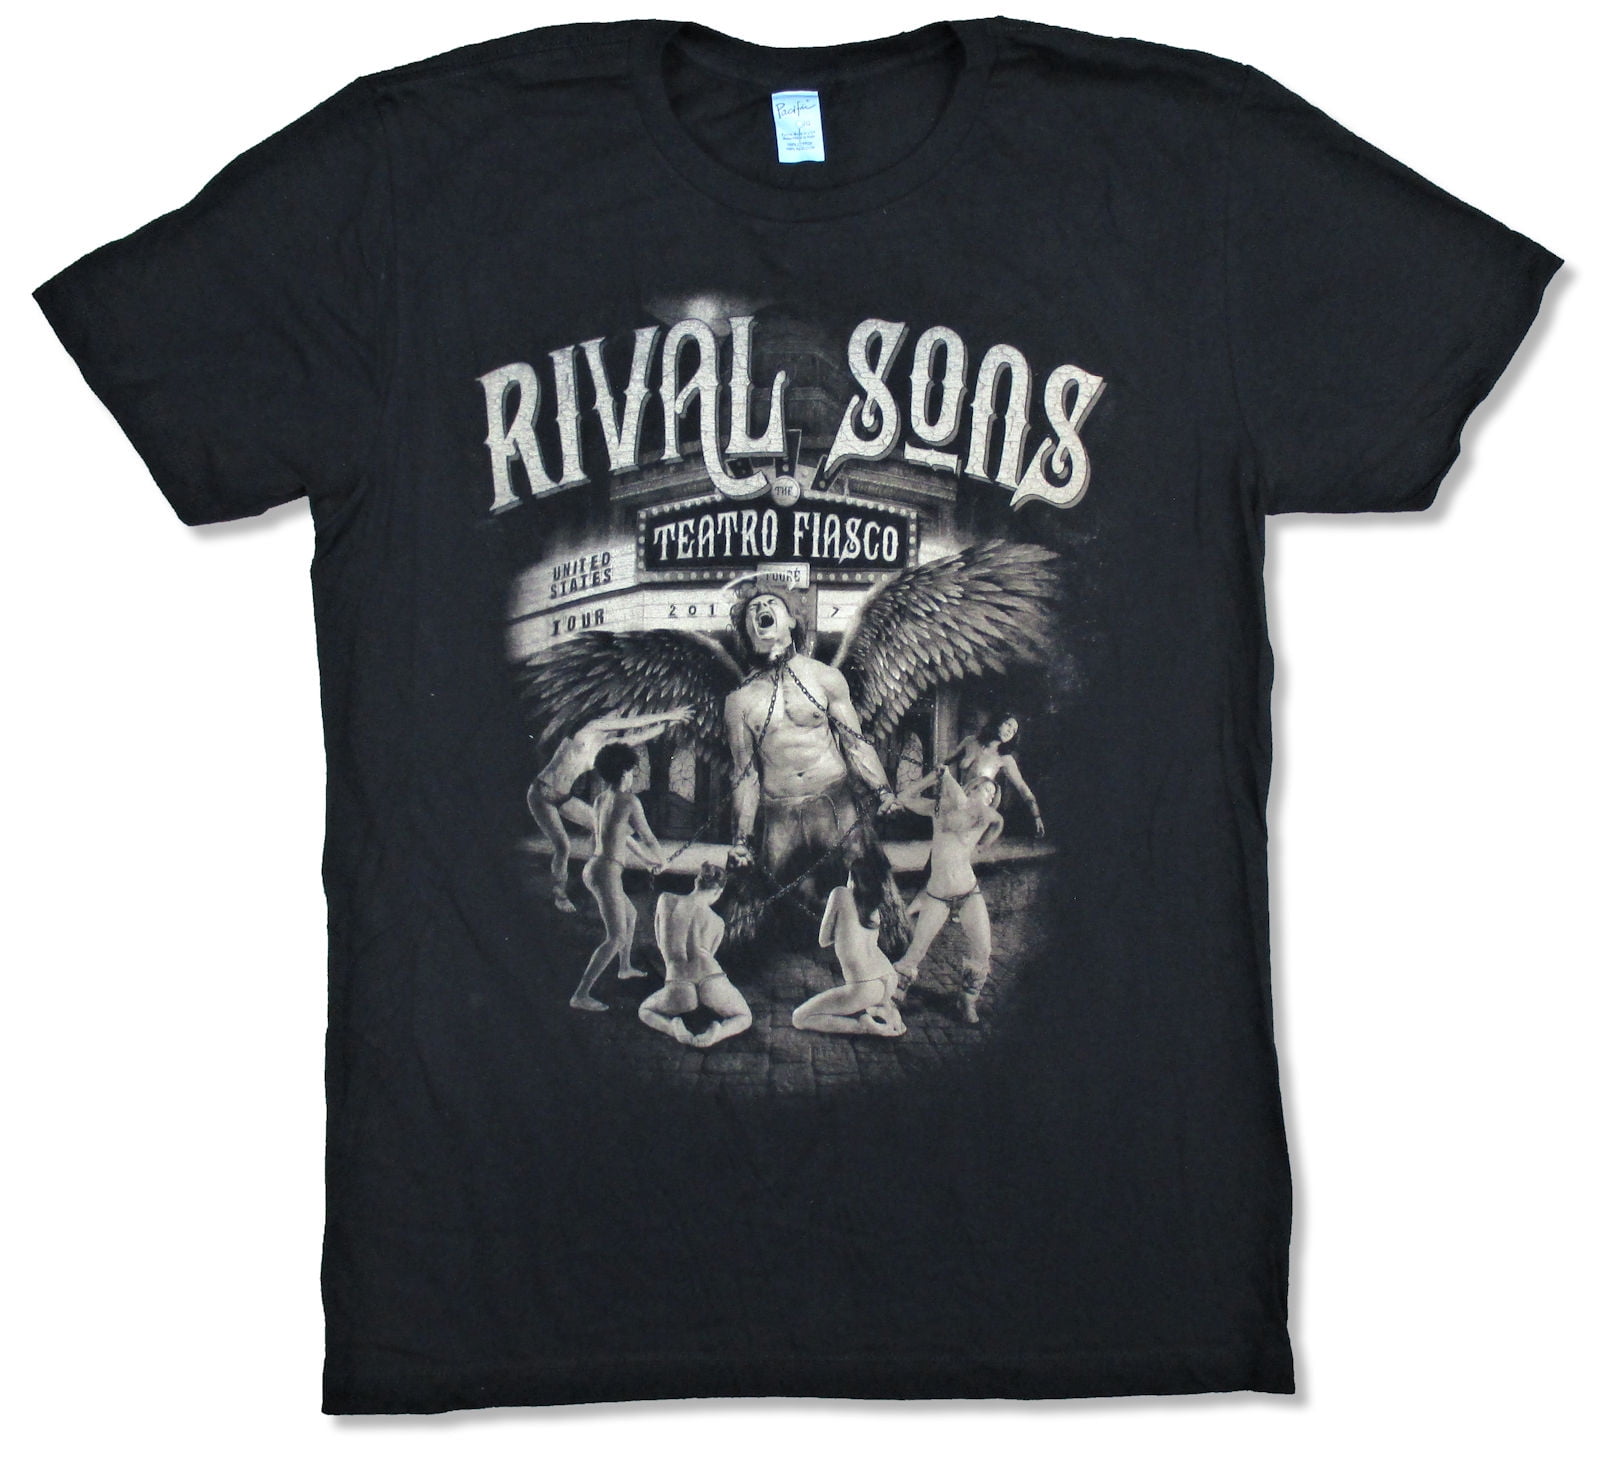 rival sons tour merchandise